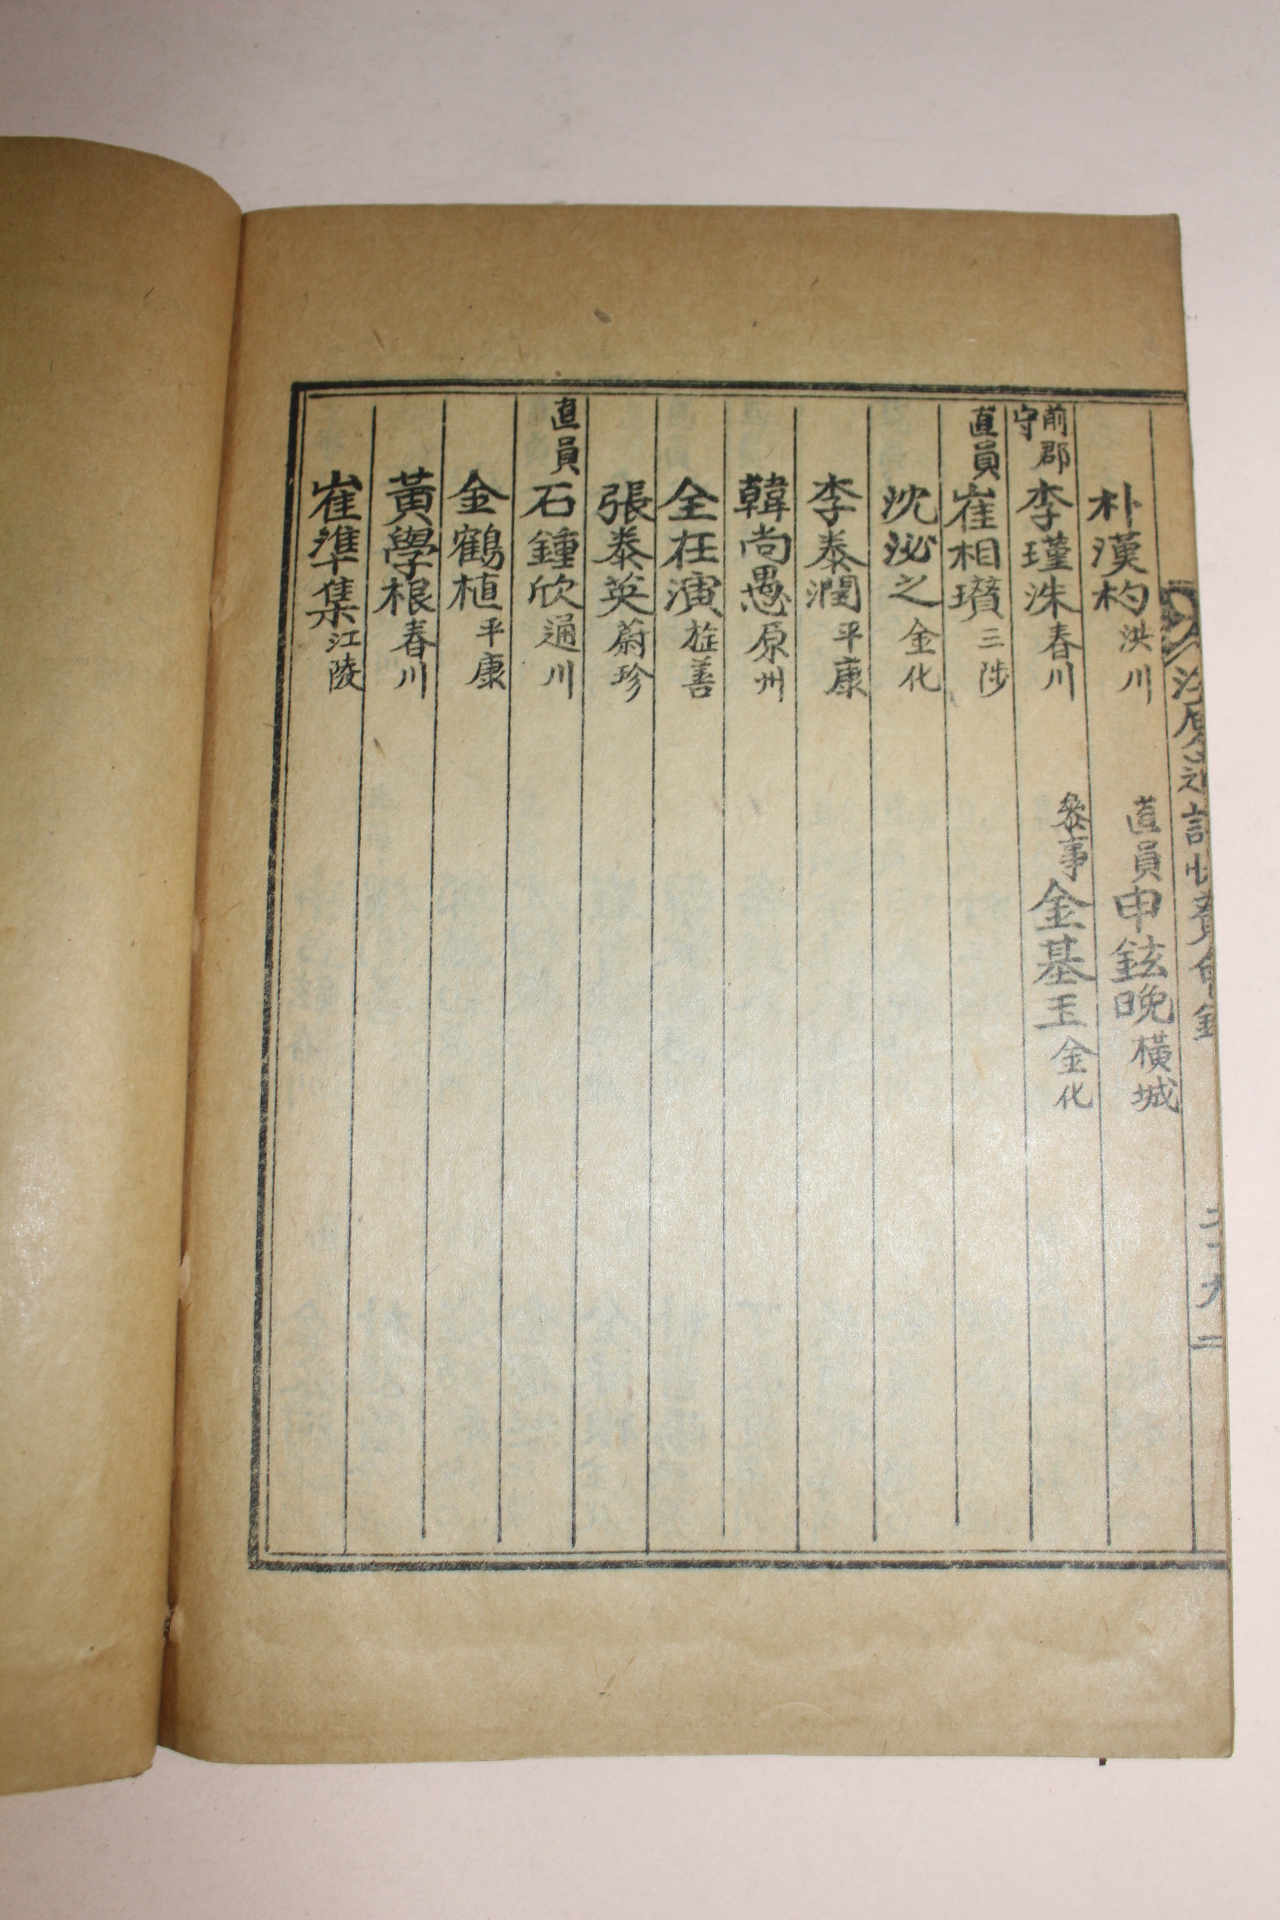 1941년 강원도지협찬회록(江原道誌協贊會錄) 1책완질